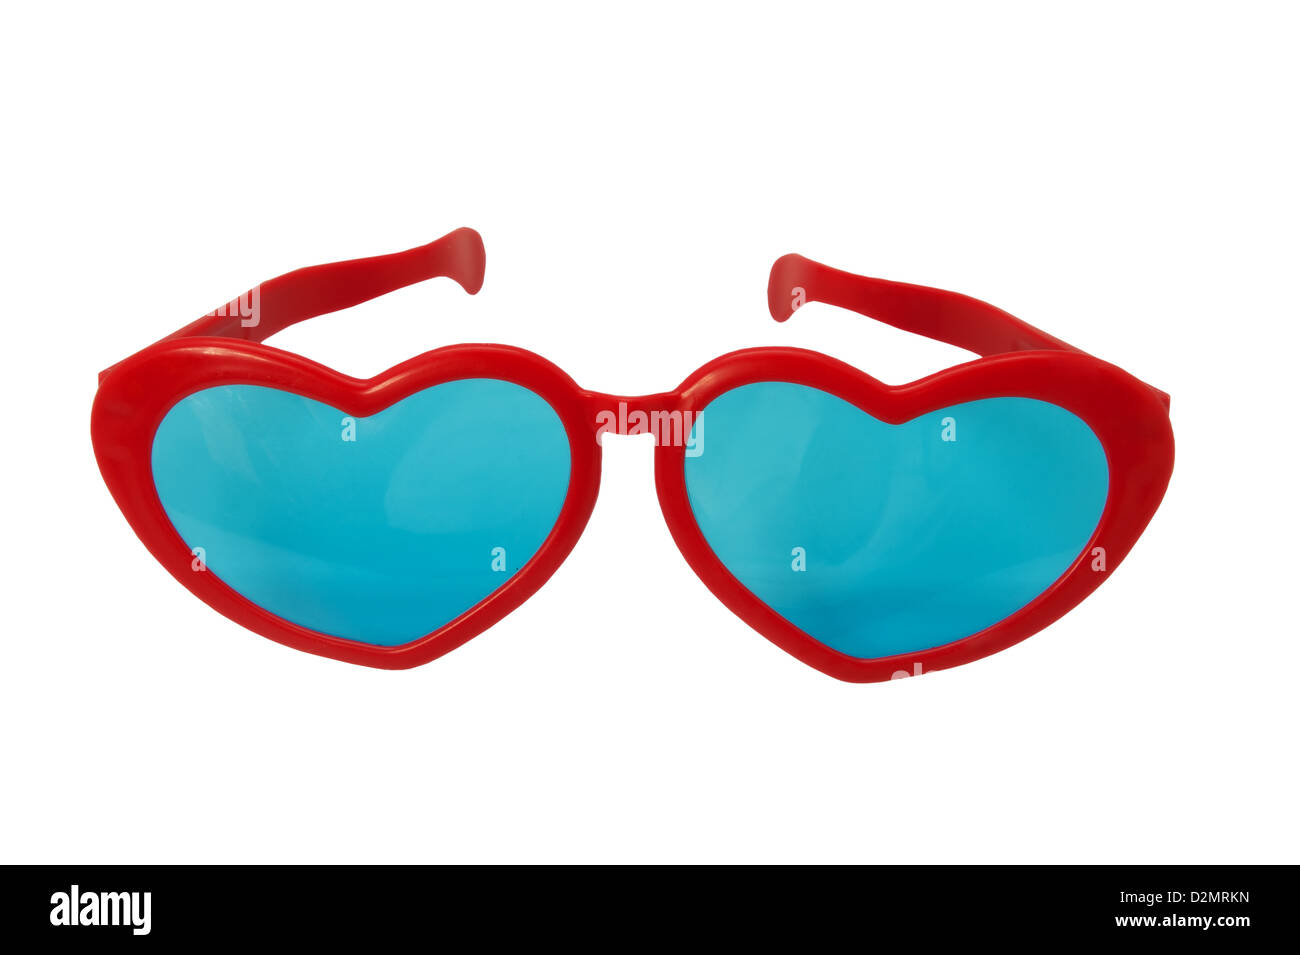 Nouveauté lunettes en forme de coeur sur fond blanc Banque D'Images